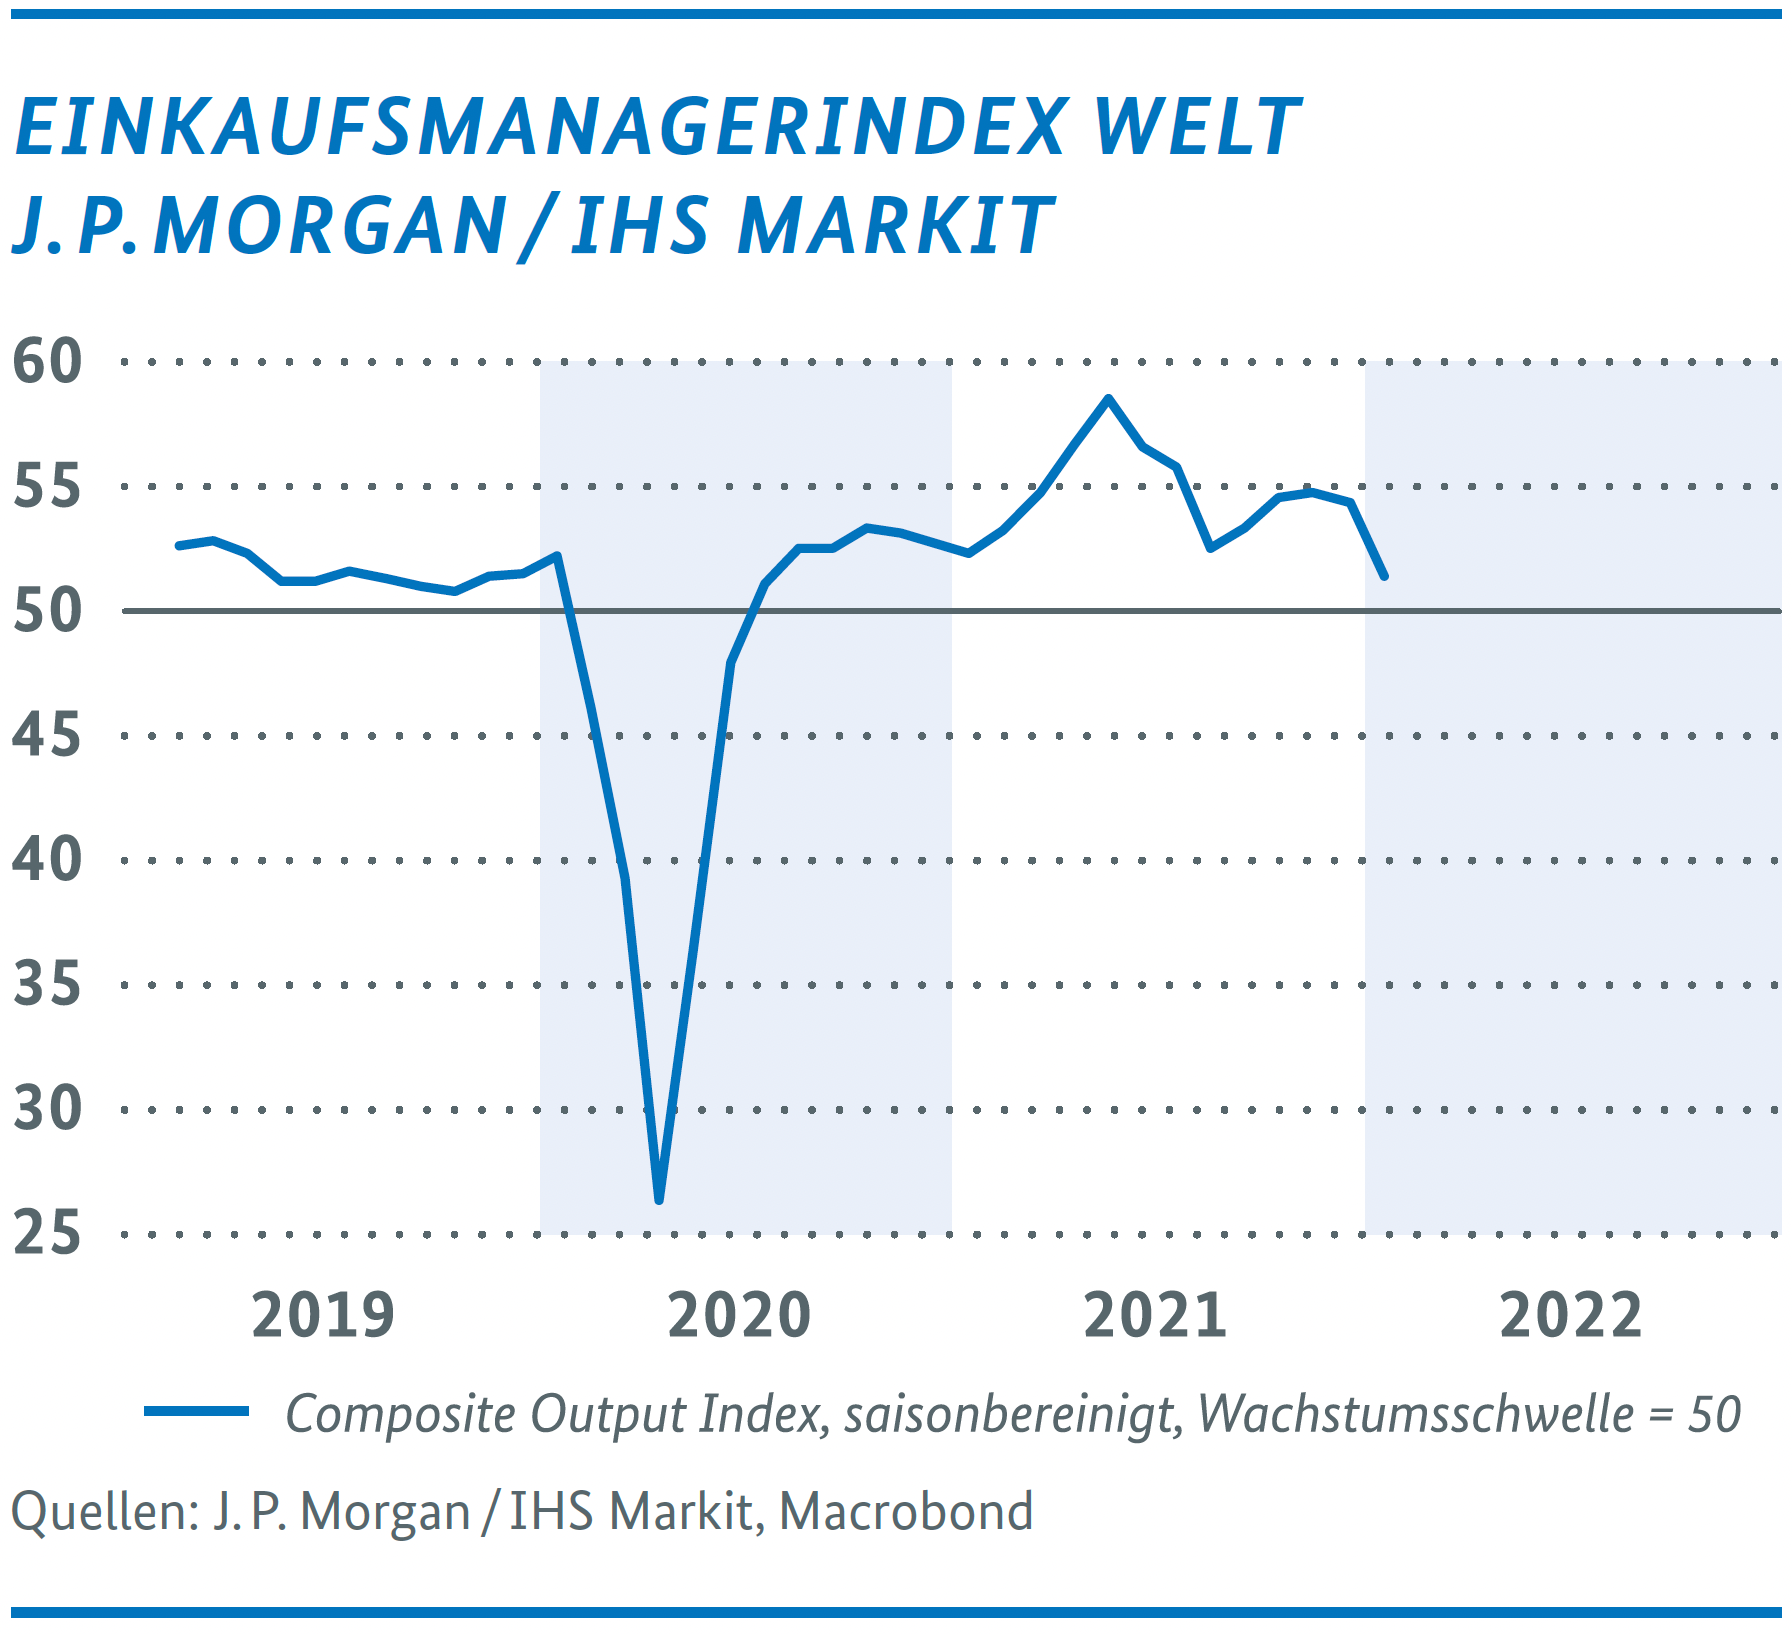 Wirtschaftliche Lage in Deutschland – Einkaufsmanagerindex Welt J. P. Morgan / IHS Markit